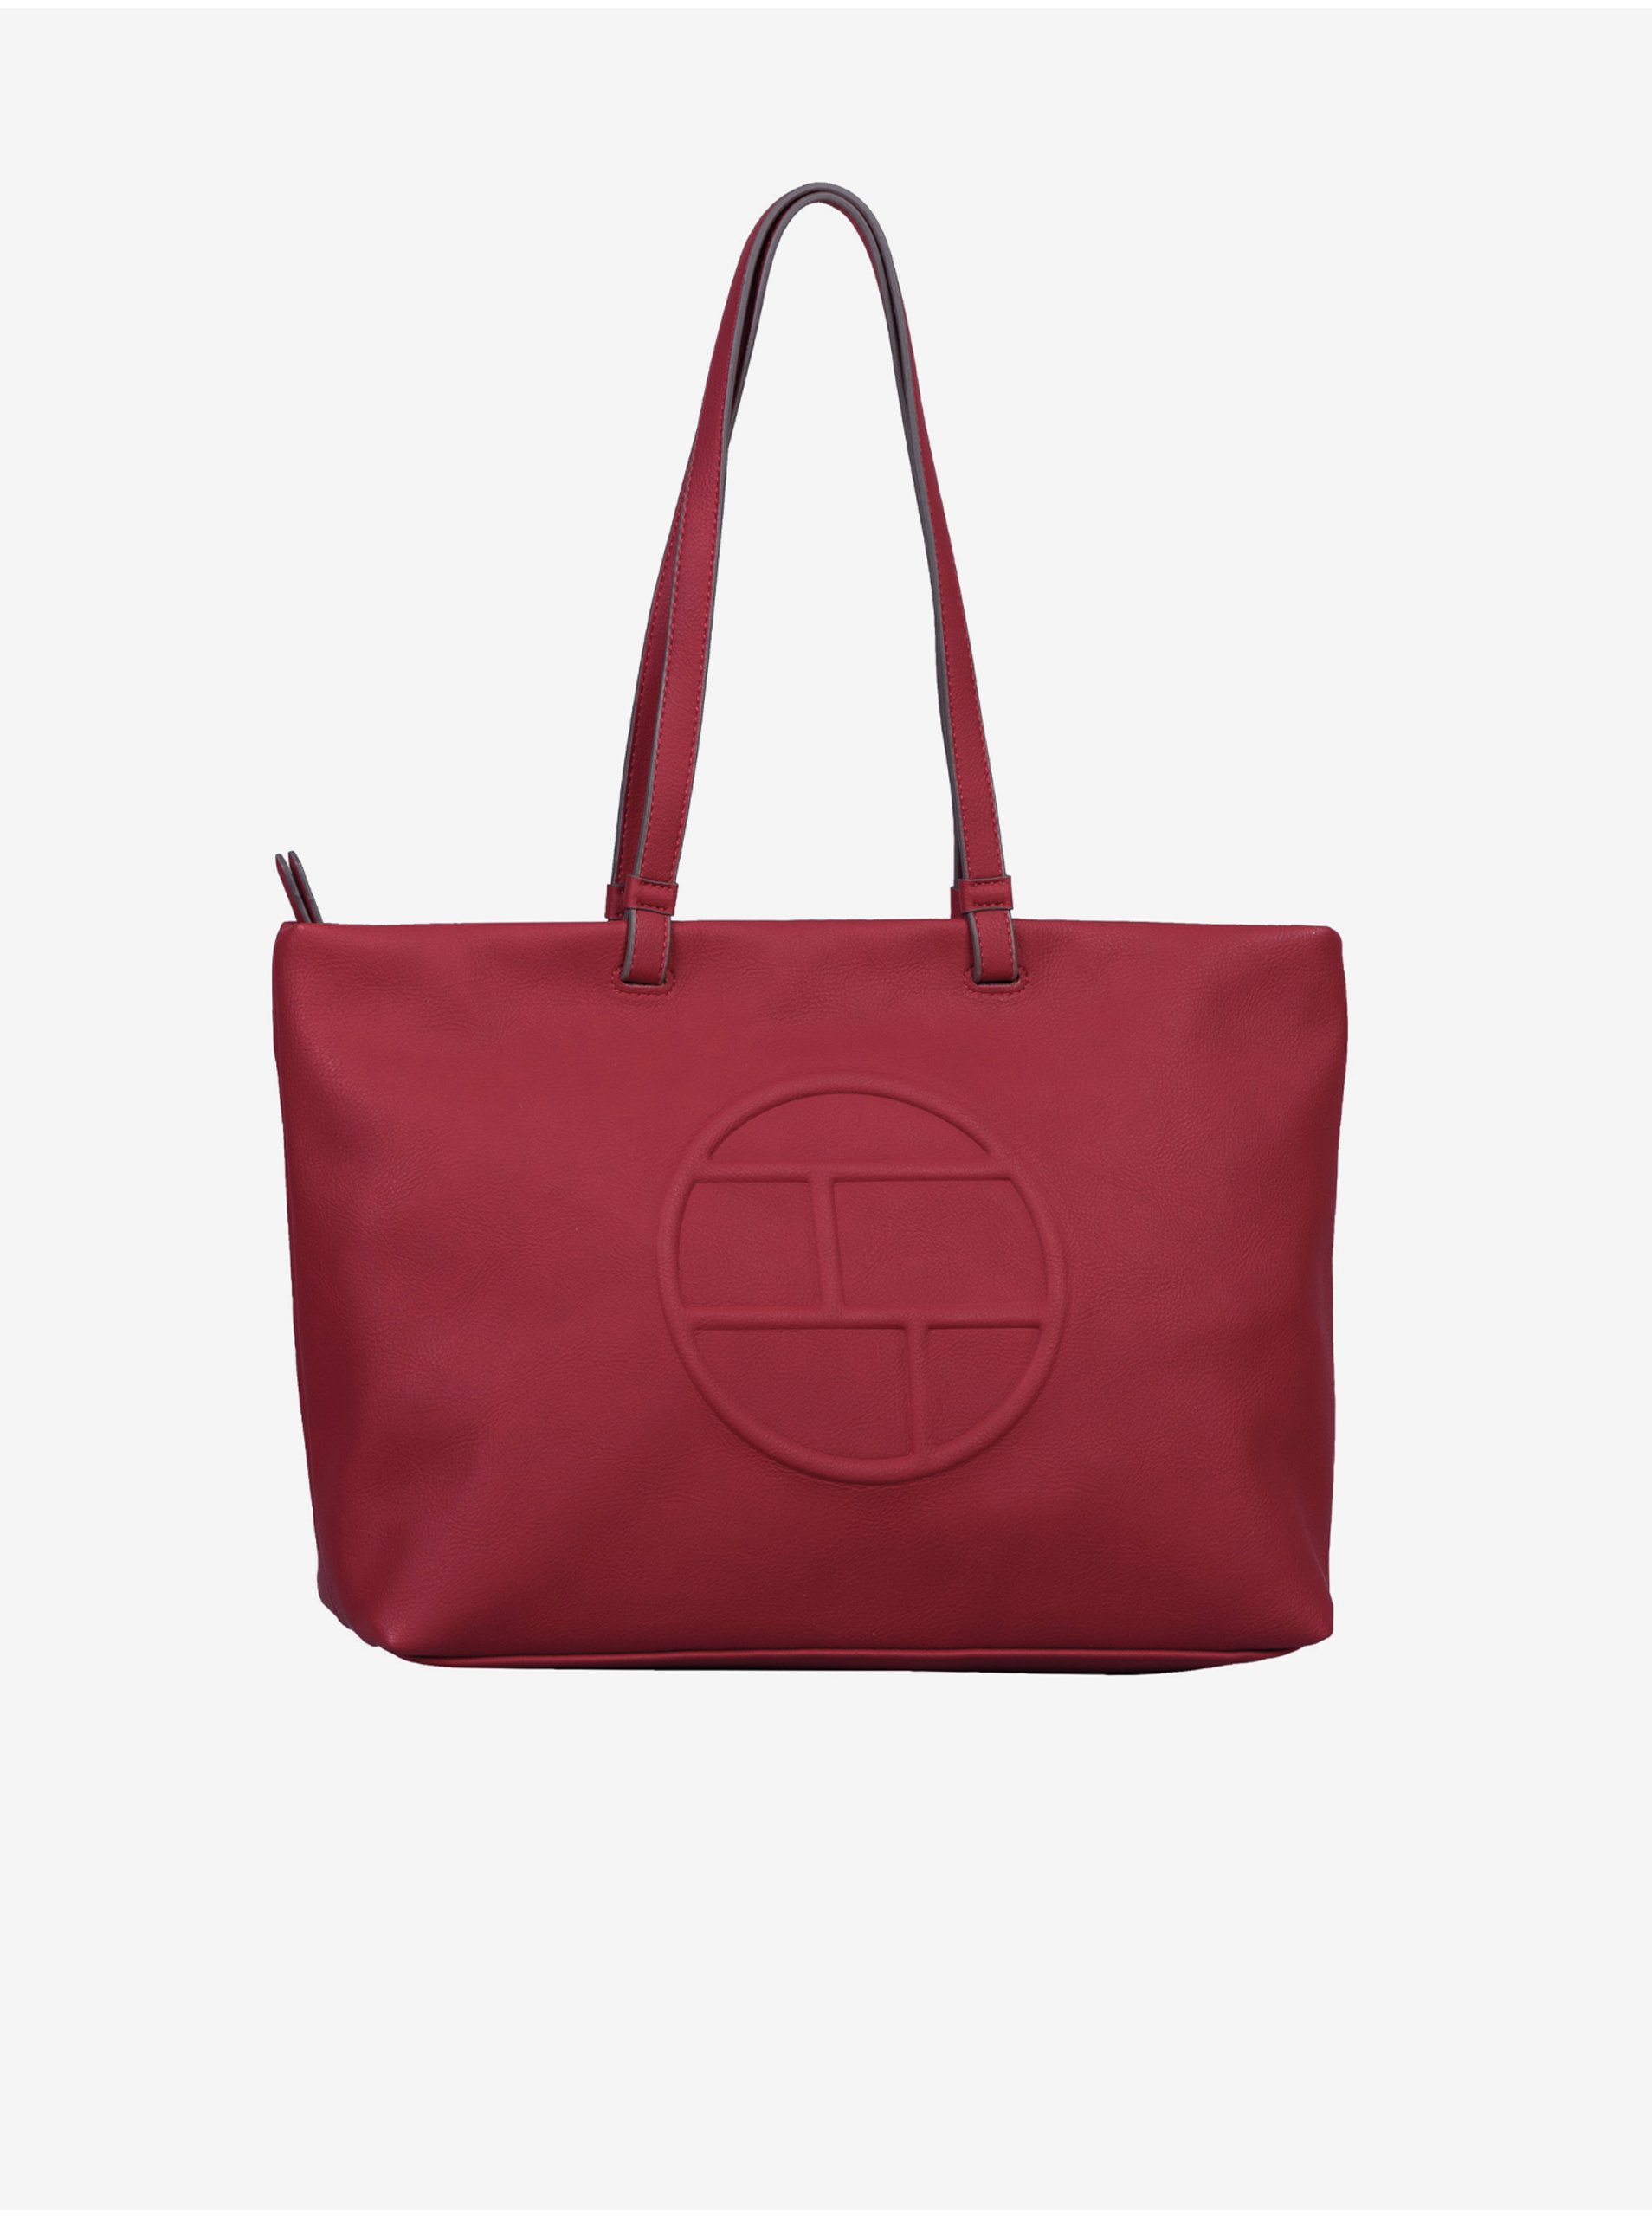 Red Women's Handbag Tom Tailor Rosabel - Women